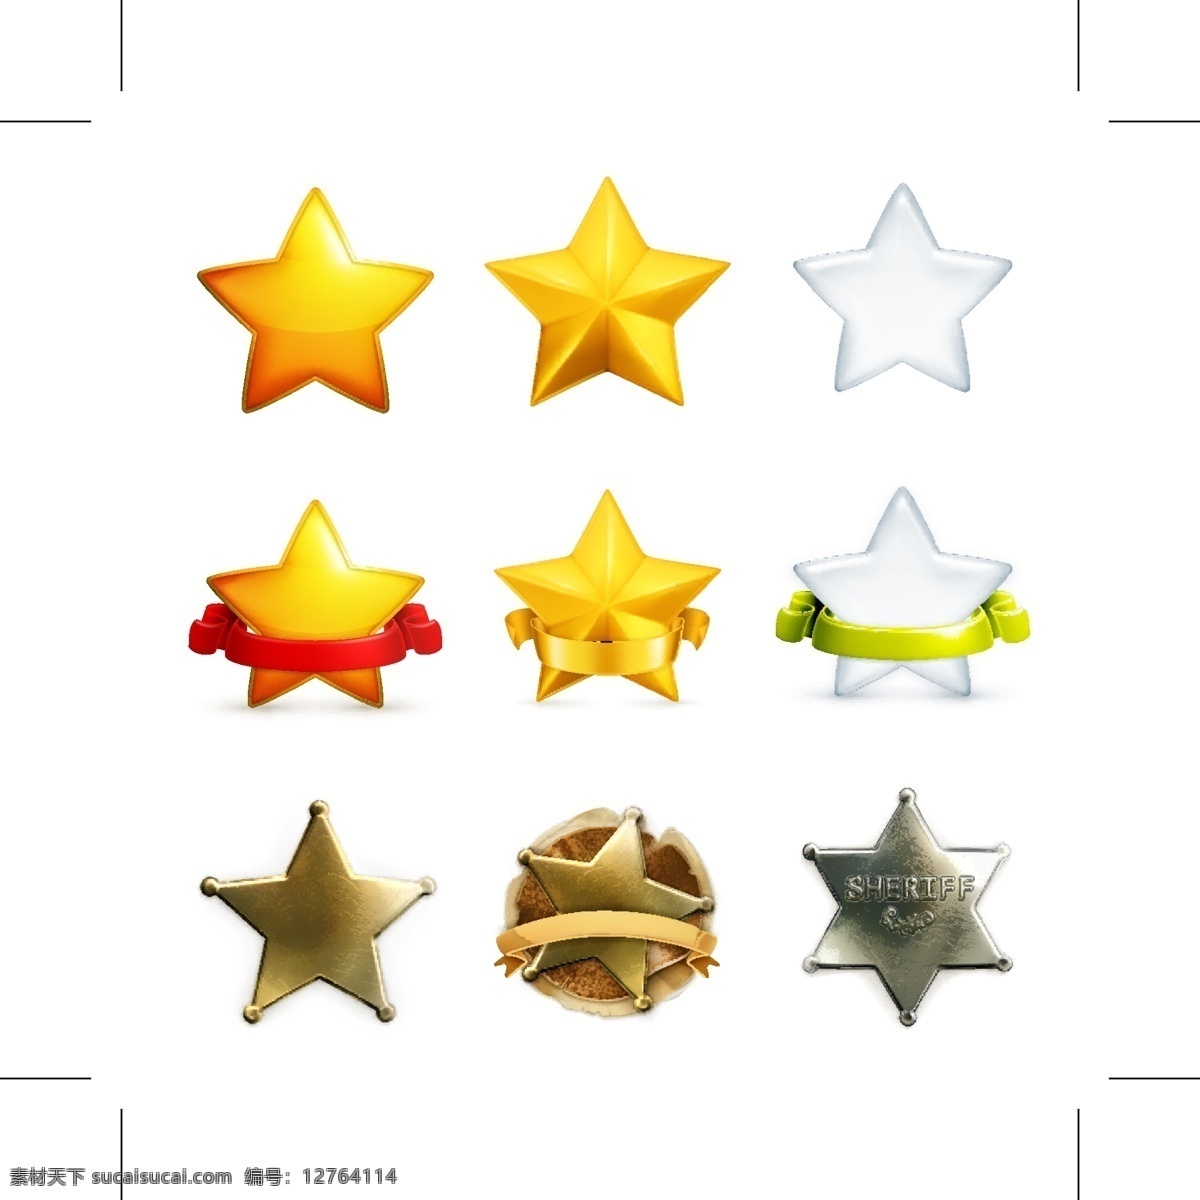 多变五角星 五角星设计 金色 五角星 金属 星星 奖状 移动界面设计 图标设计